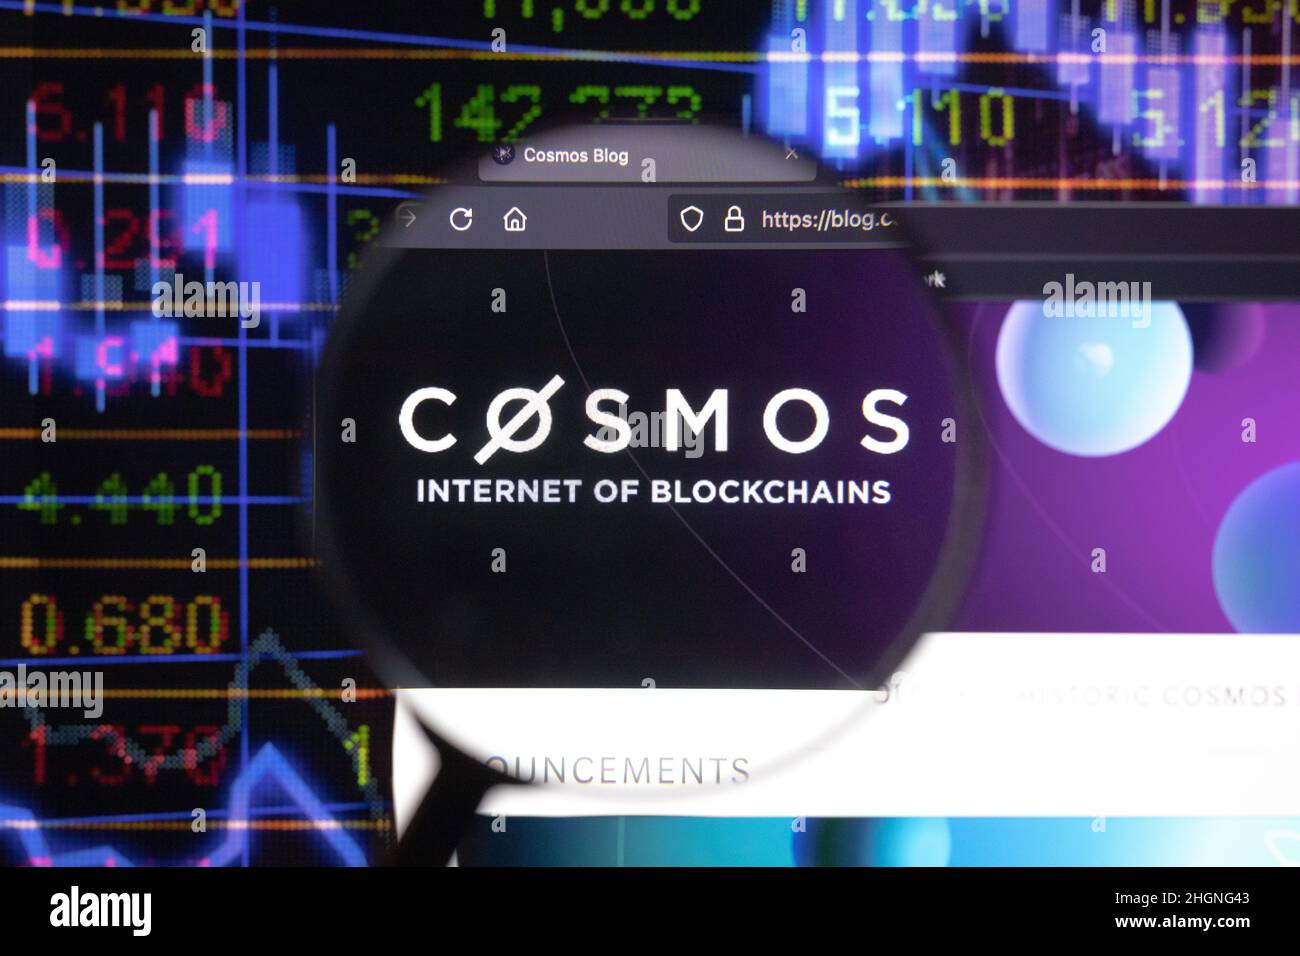 Cosmos crypto company logo on a website, seen on a computer screen through a magnifying glass. Stock Photo